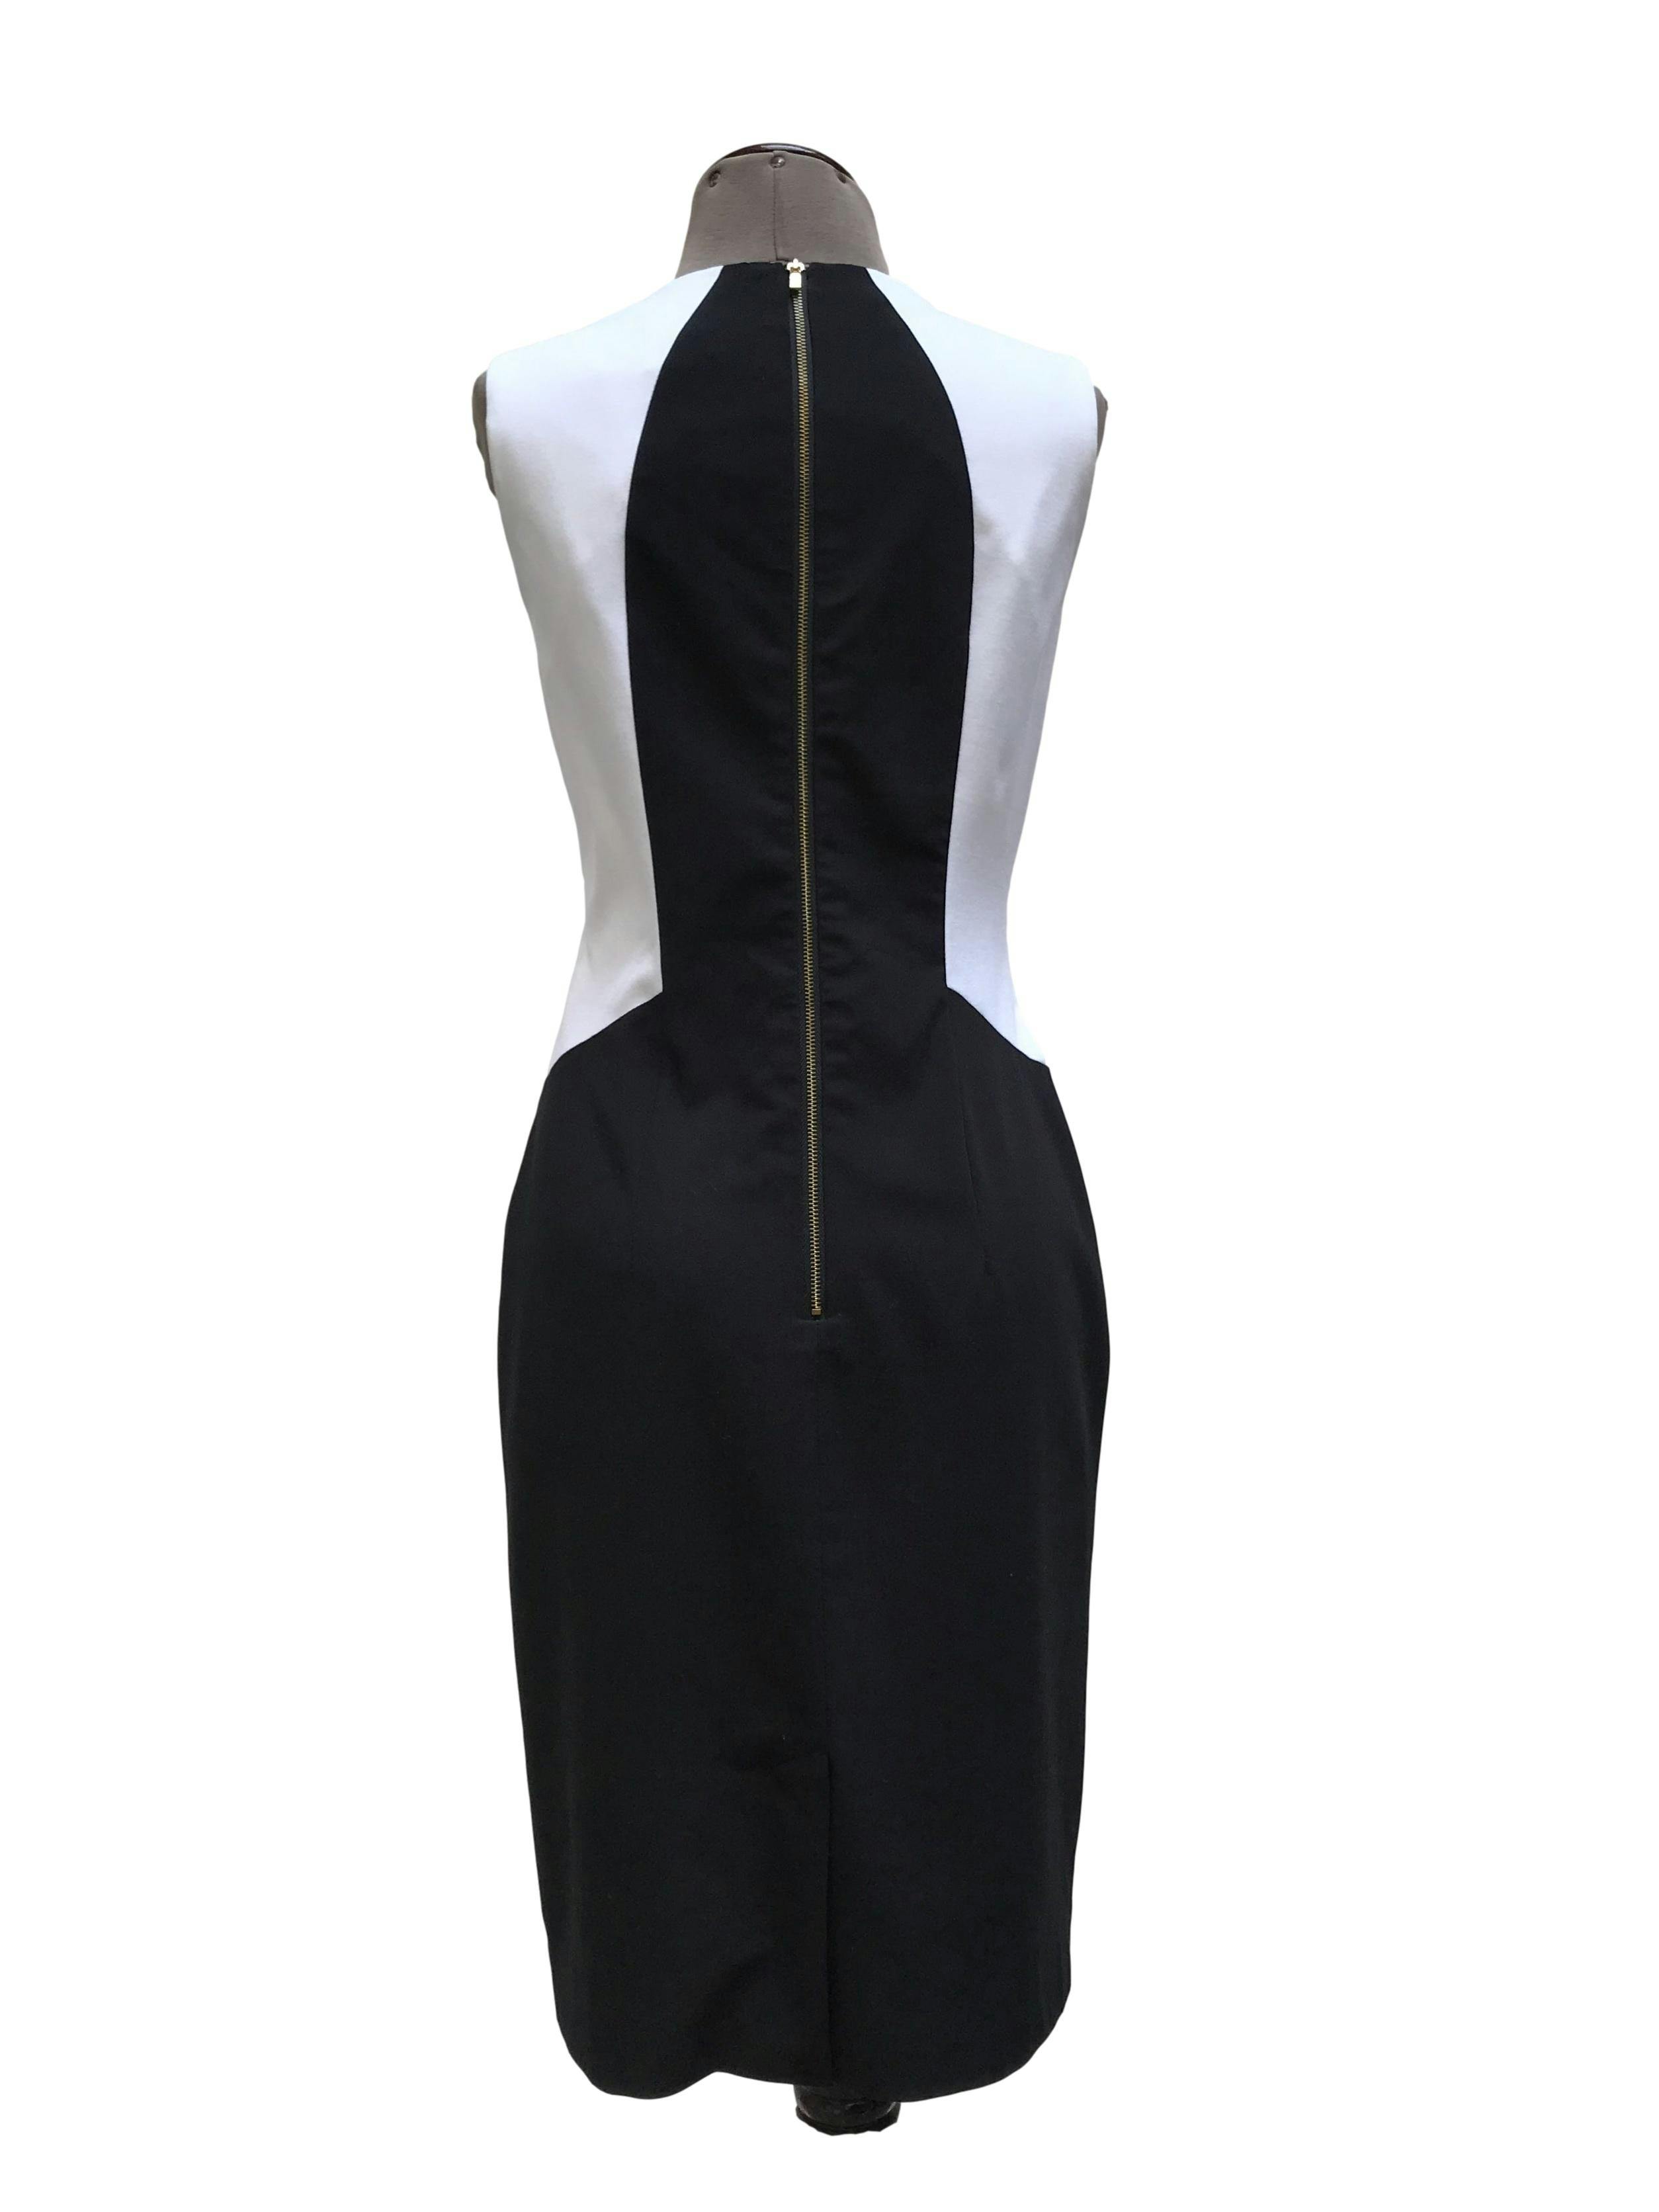 Vestido Calvin Klein tela tipo sastre negro, blanco y turquesa, forrado, con cierre posterior. Precio original S/ 420. Busto 92cm Largo 95cm